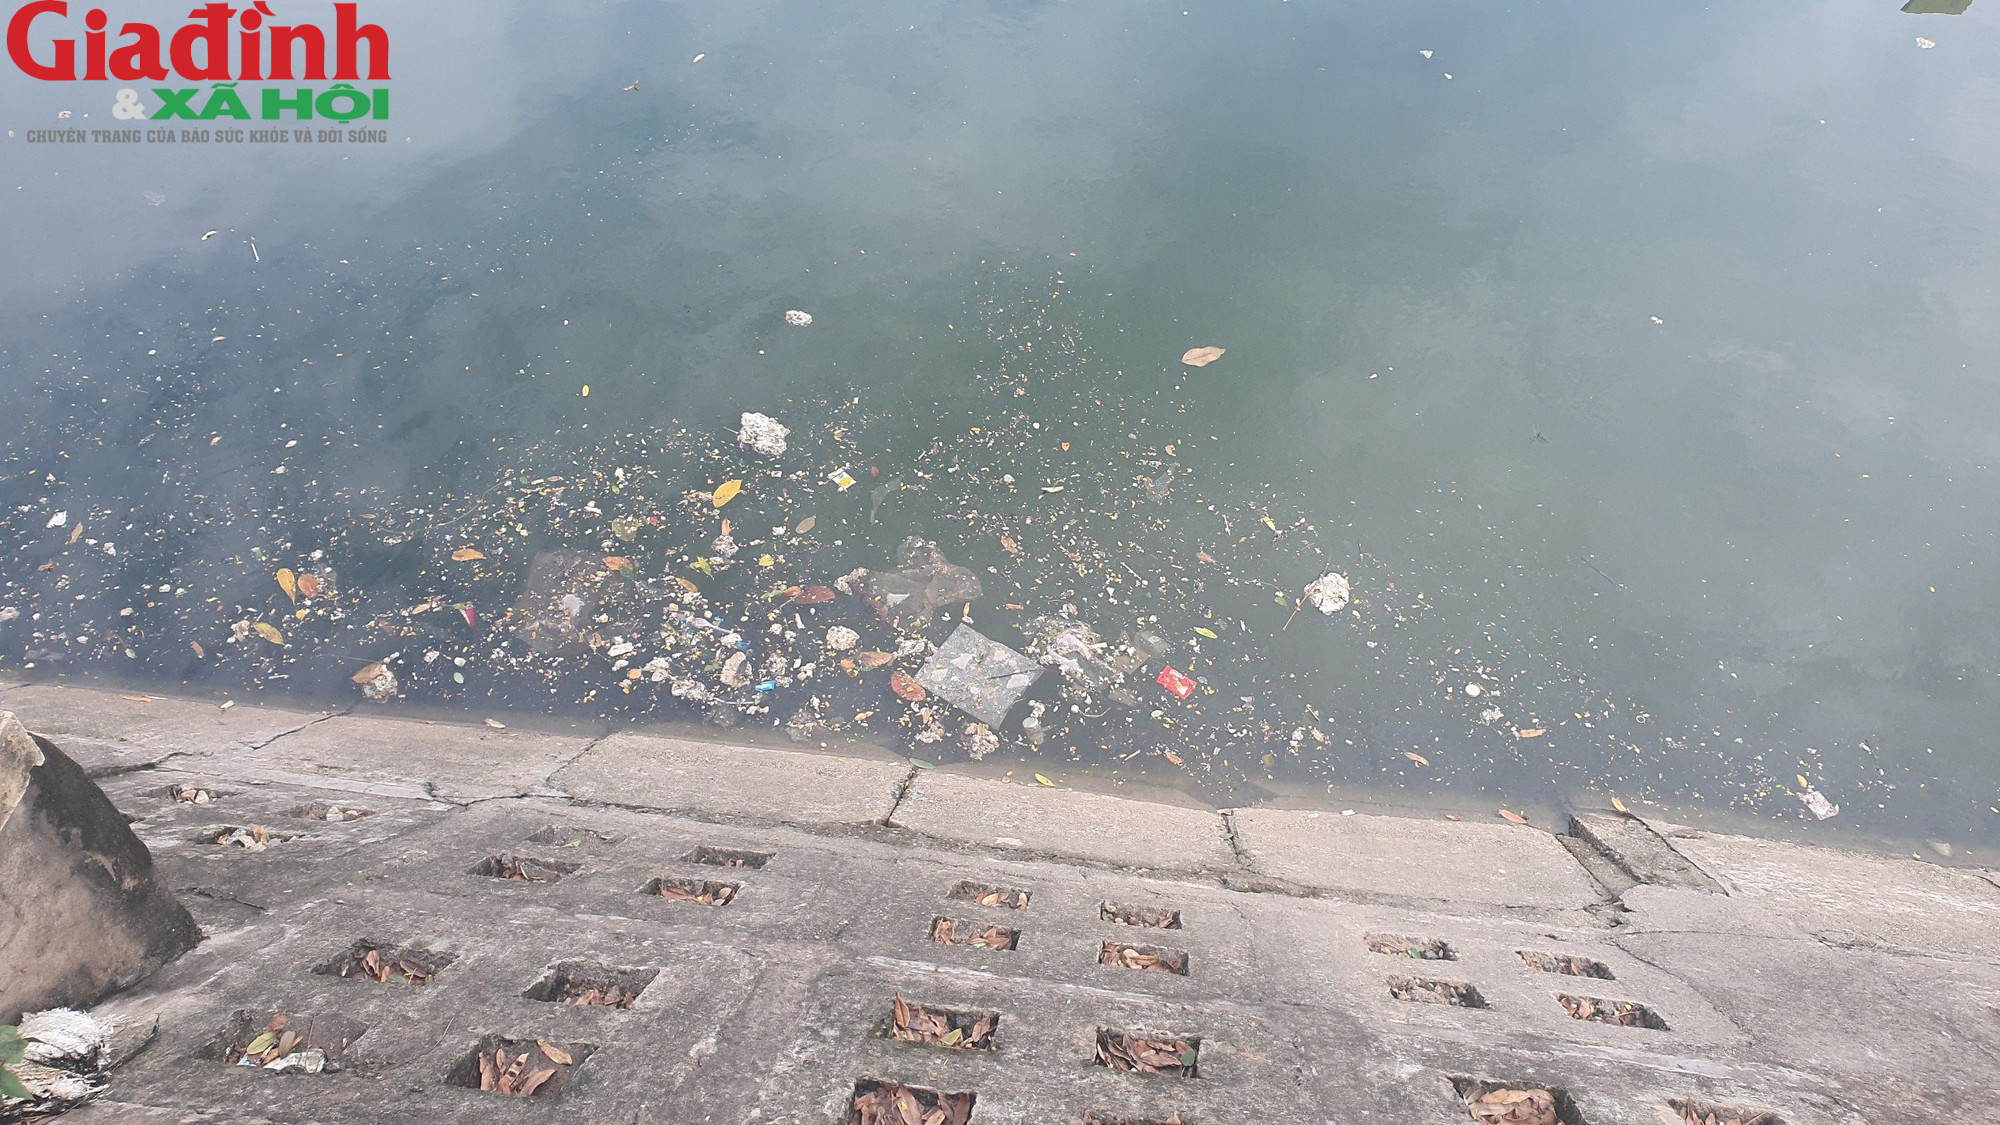 Nhiều hồ ở Hà Nội xuất hiện rác thải, xác cá chết trôi nổi gây ô nhiễm môi trường - Ảnh 2.